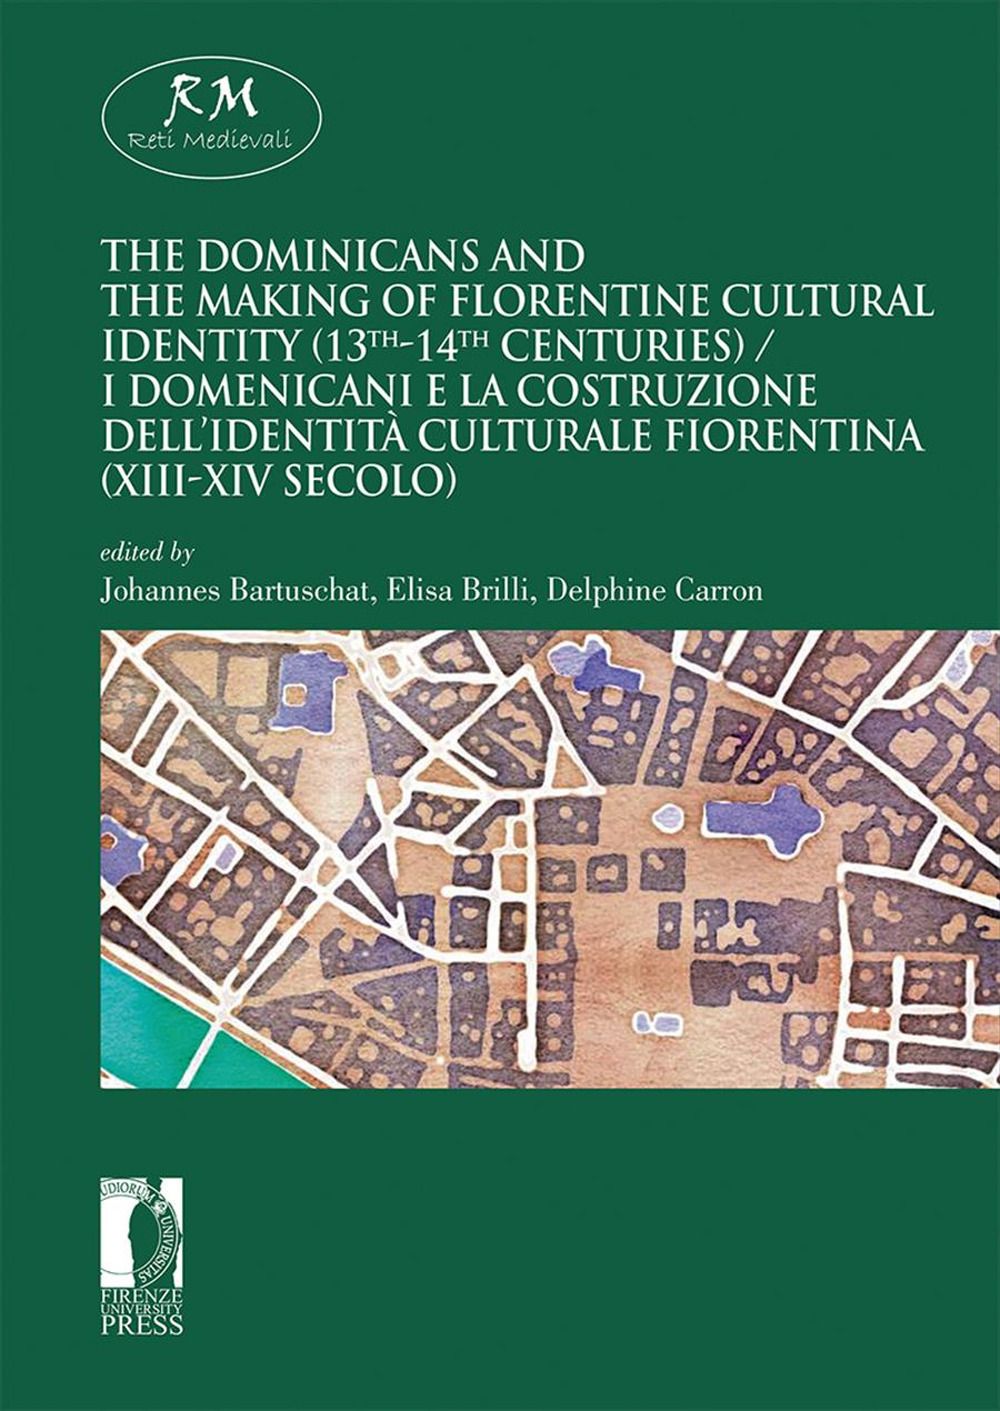 The dominicans and the making of florentine cultural identity (13th-14th centuries)-I domenicani e la costruzione dell'identità culturale fiorentina (XIII-XIV secolo). Ediz. bilingue